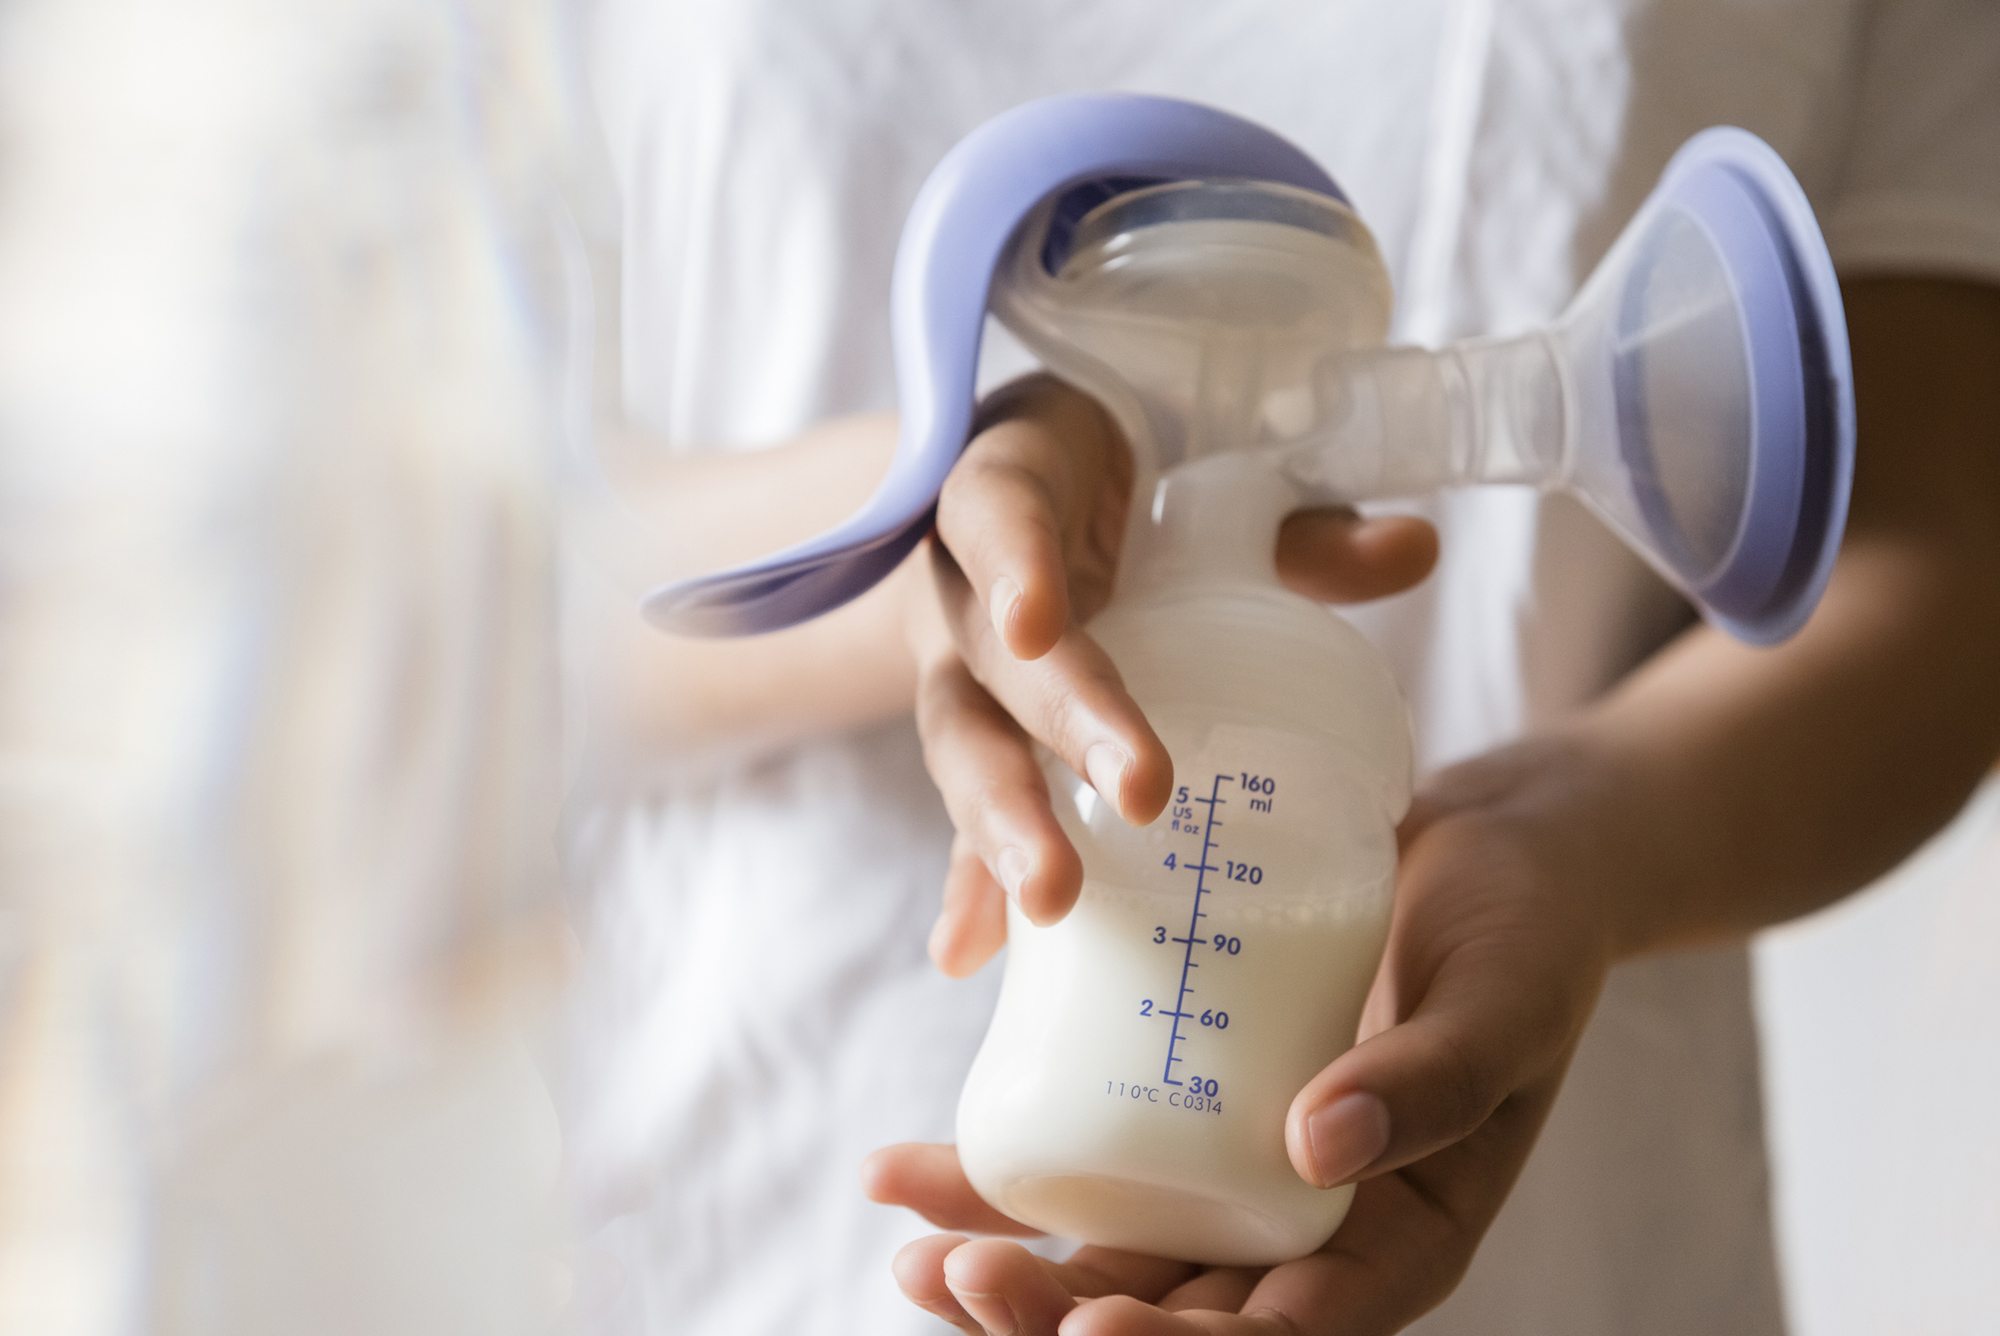 What Milk-Sharing Communities Reveal photo image